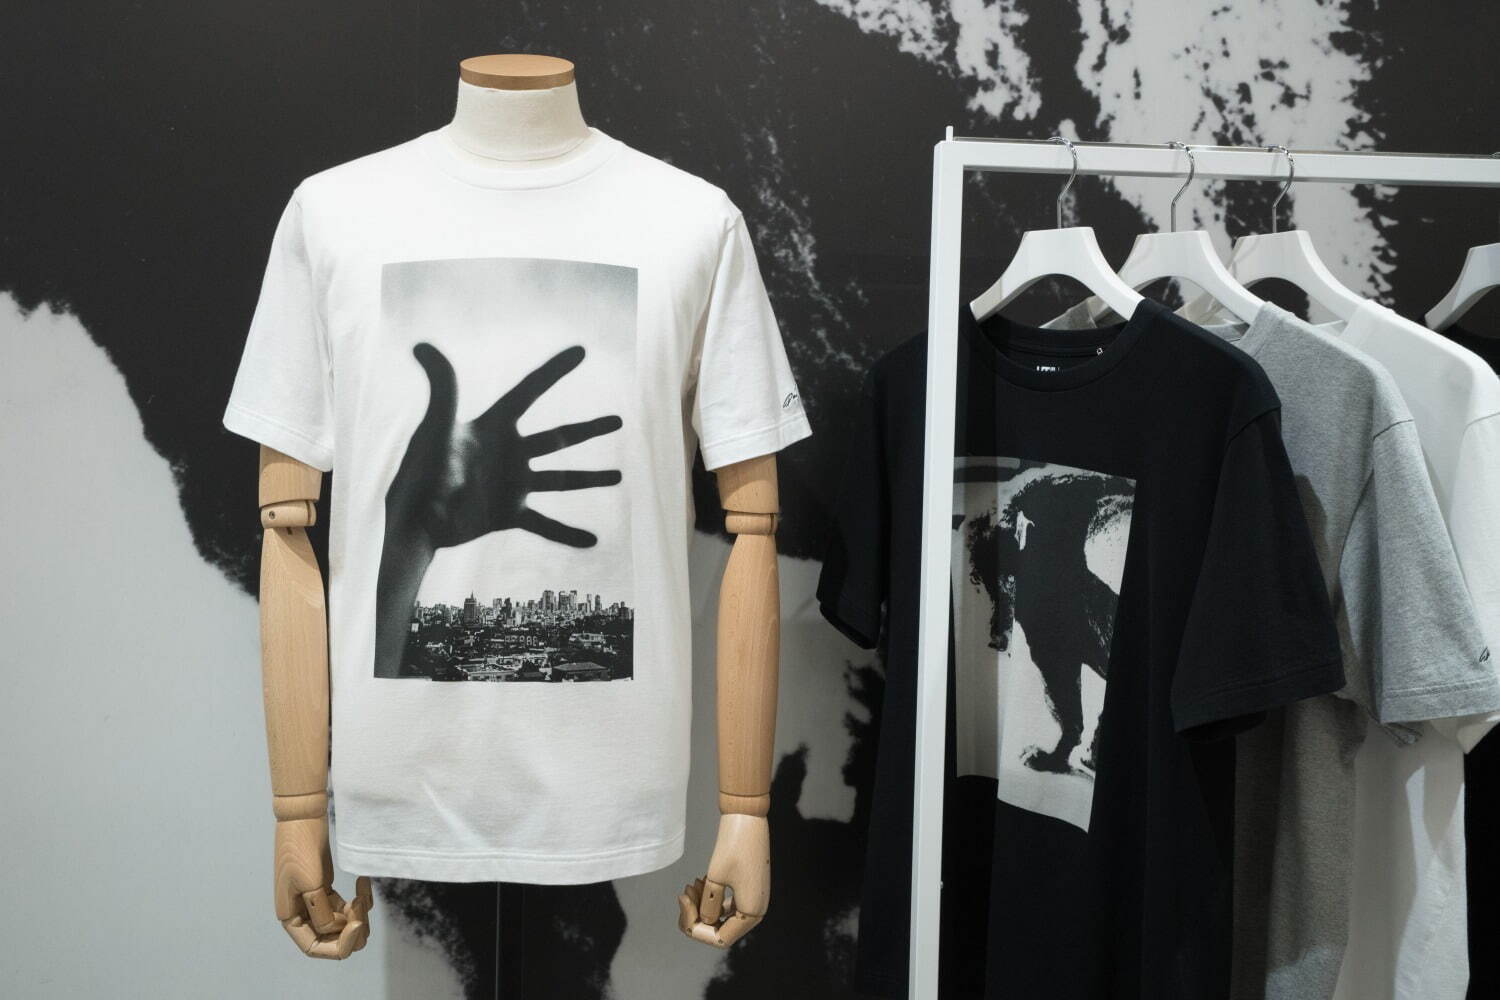 メンズTシャツ 1,500円
©Daido Moriyama Photo Foundation